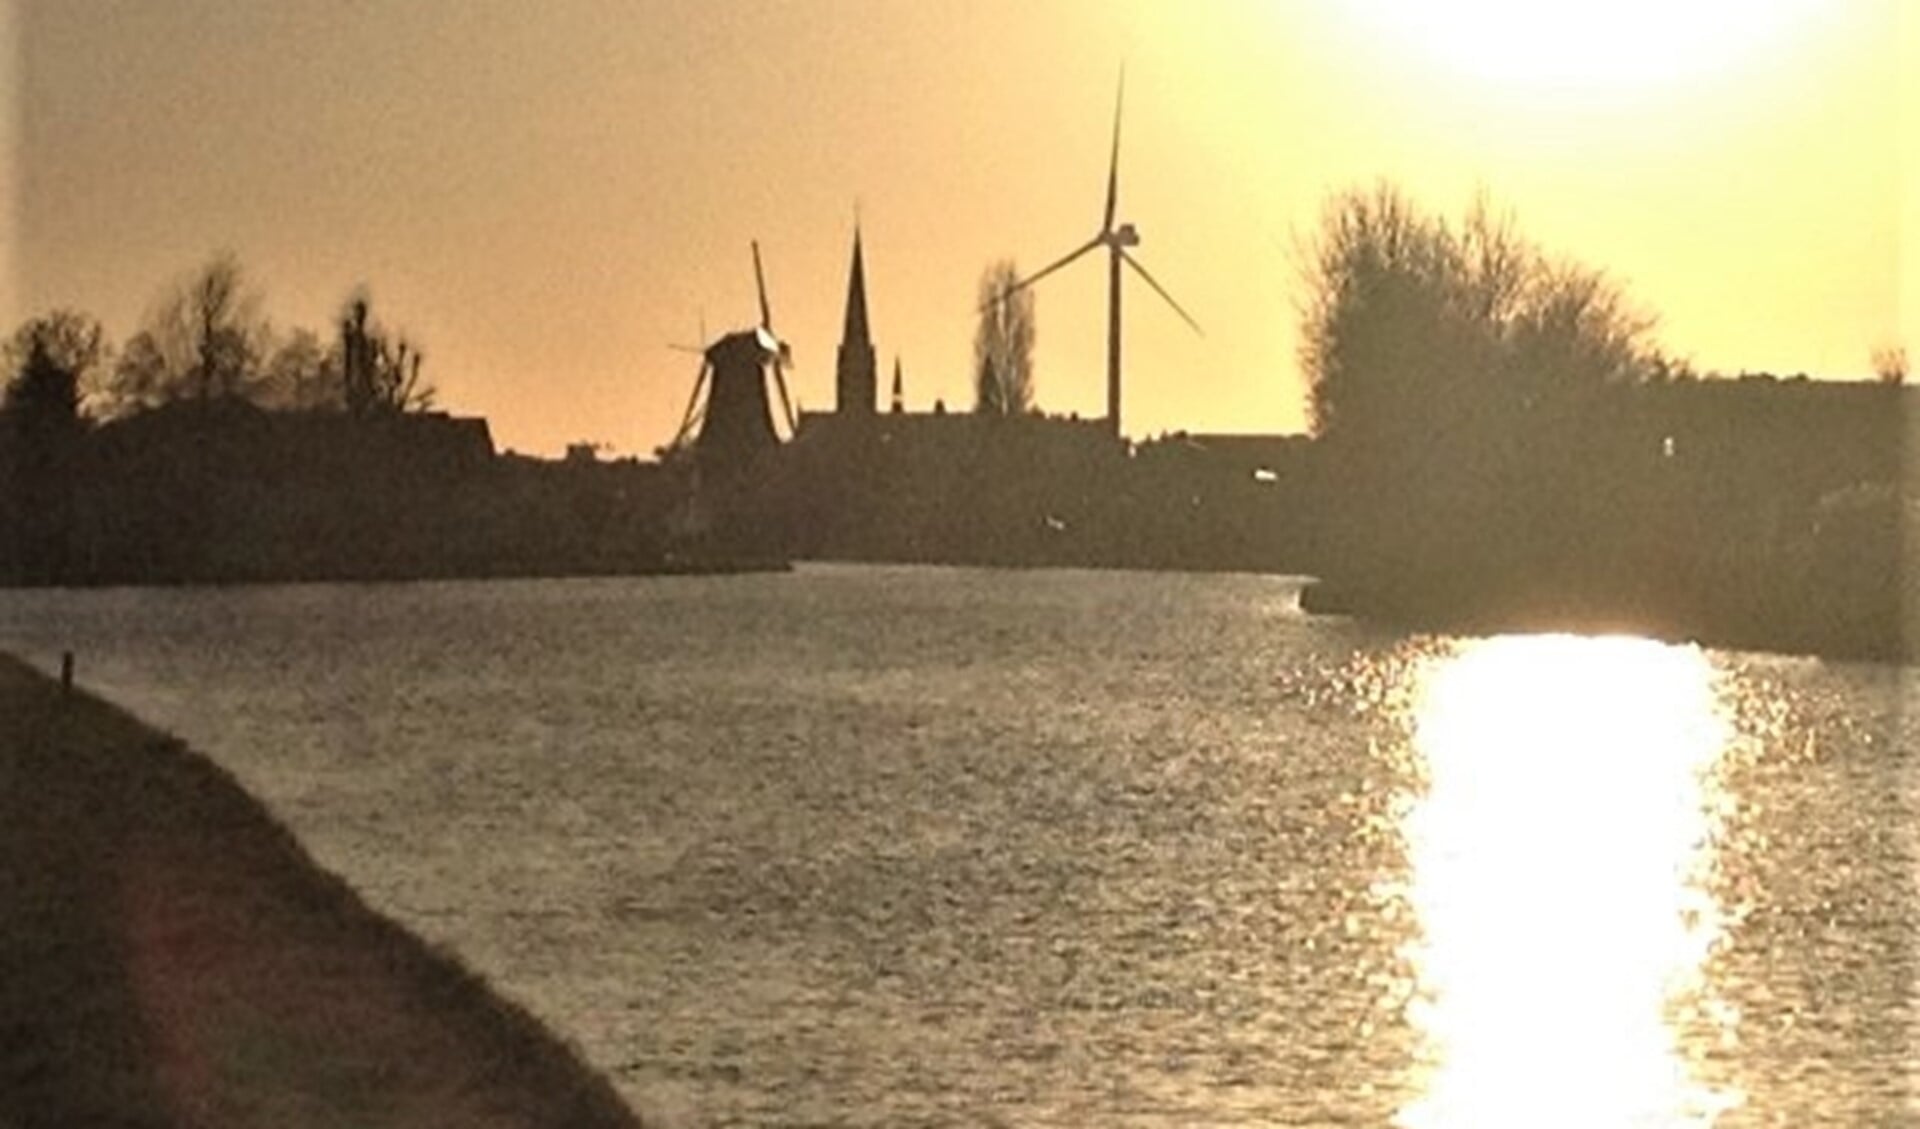 De skyline van Leidschendam met het silhouet van de windmolen in de (Haagse) Vlietzone (foto: pr).